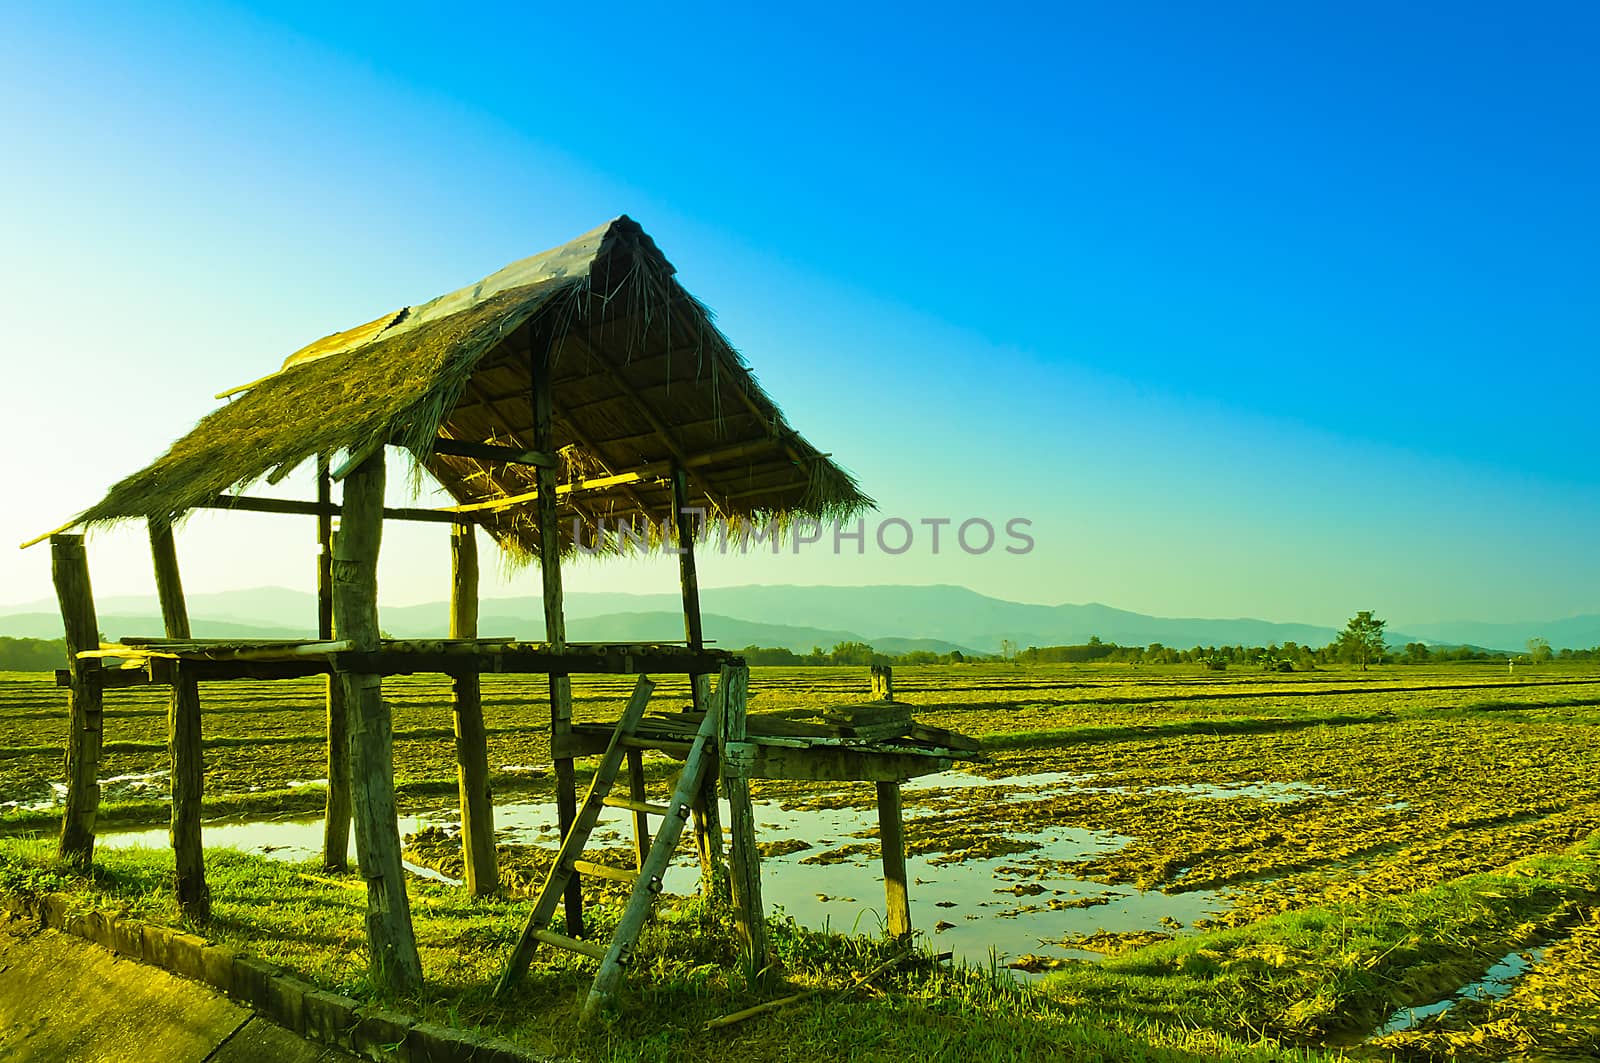 Faemer's Little Shack biside Rice Field by kobfujar